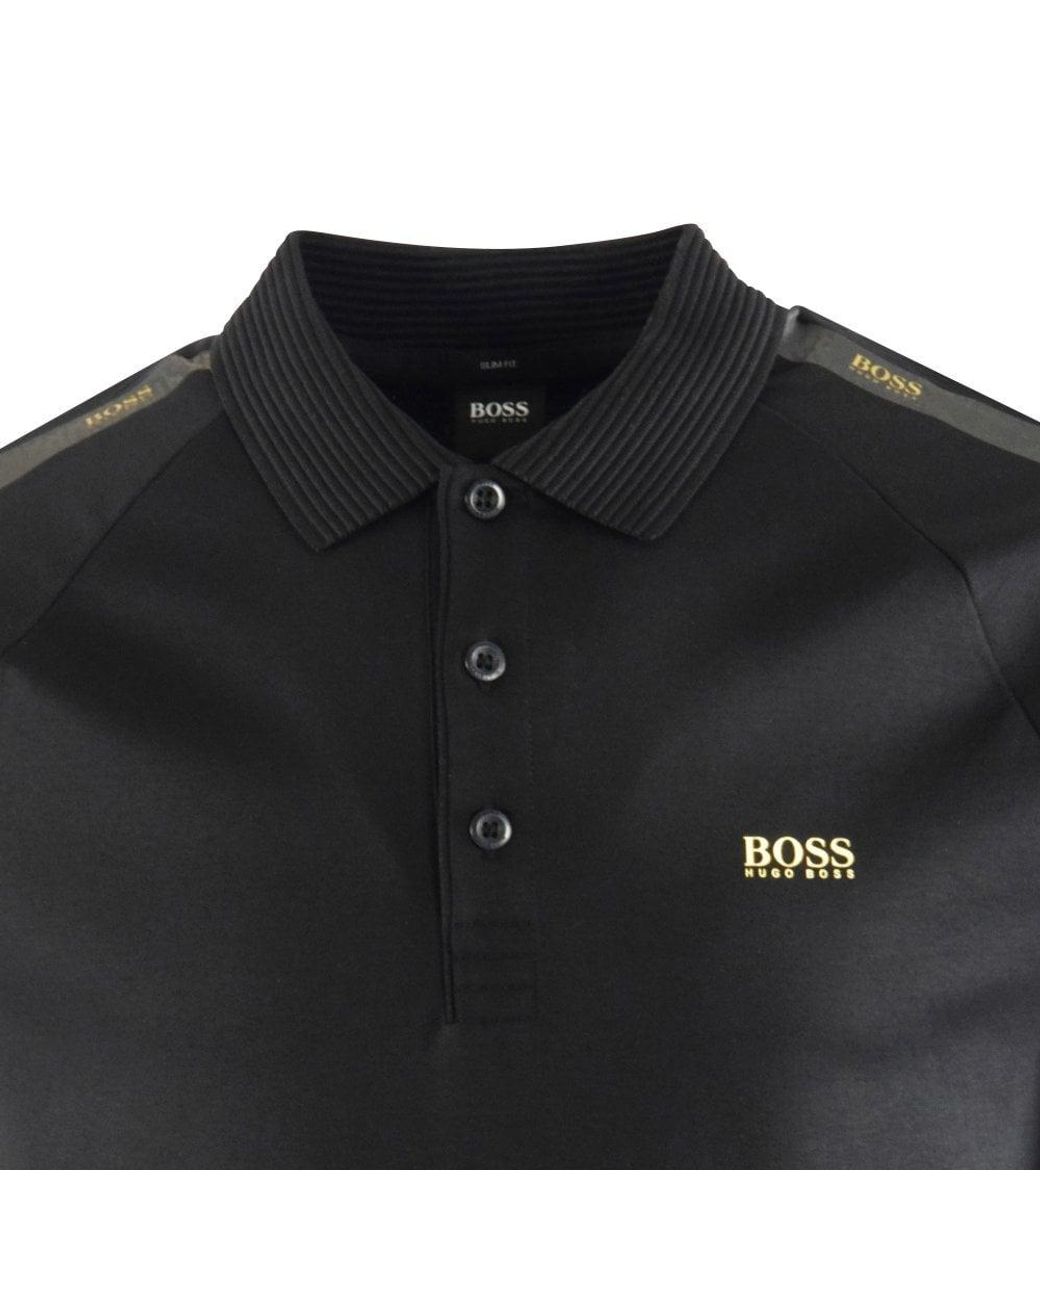 BOSS by HUGO BOSS Black & Gold Tape Polo Shirt for Men | Lyst UK